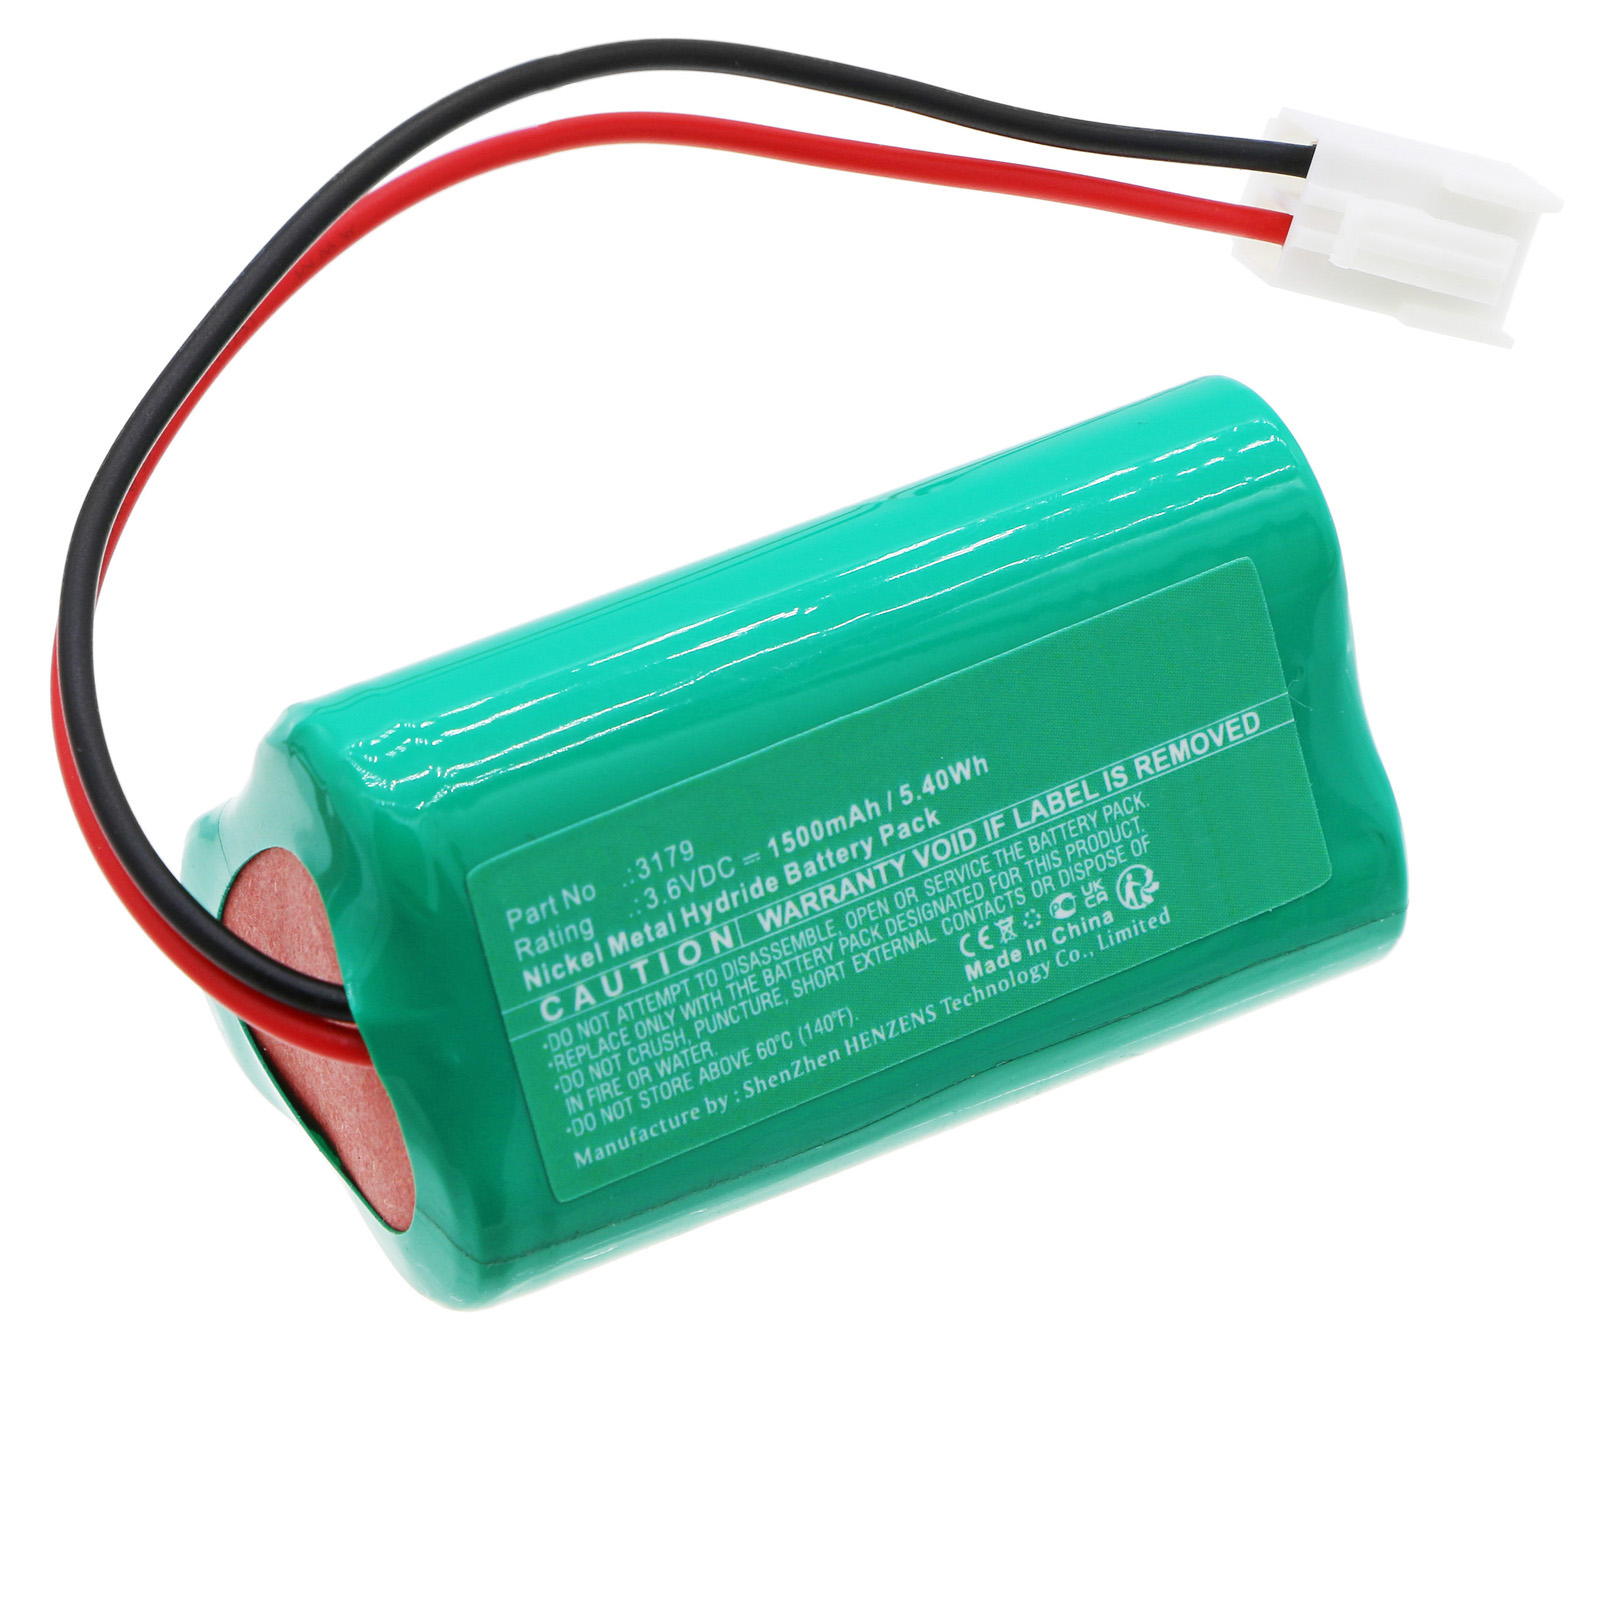 Synergy Digital Emergency Lighting Battery, Compatible with DOTLUX 3179 Emergency Lighting Battery (Ni-MH, 3.6V, 1500mAh)